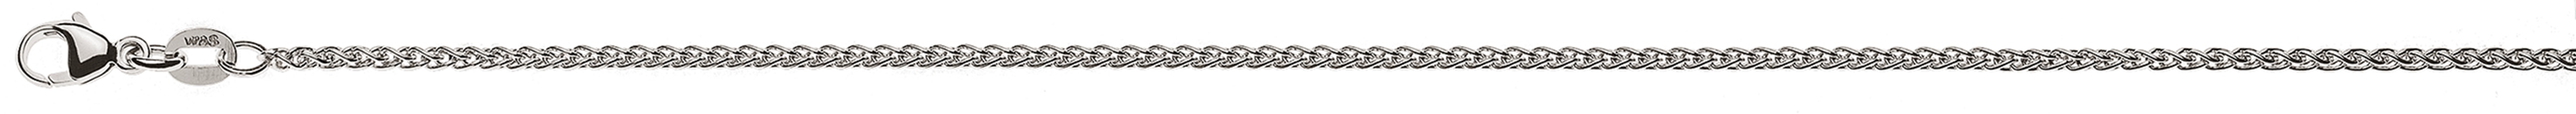 AURONOS Élégance Necklace white gold 14K cable chain 42cm 1.65mm